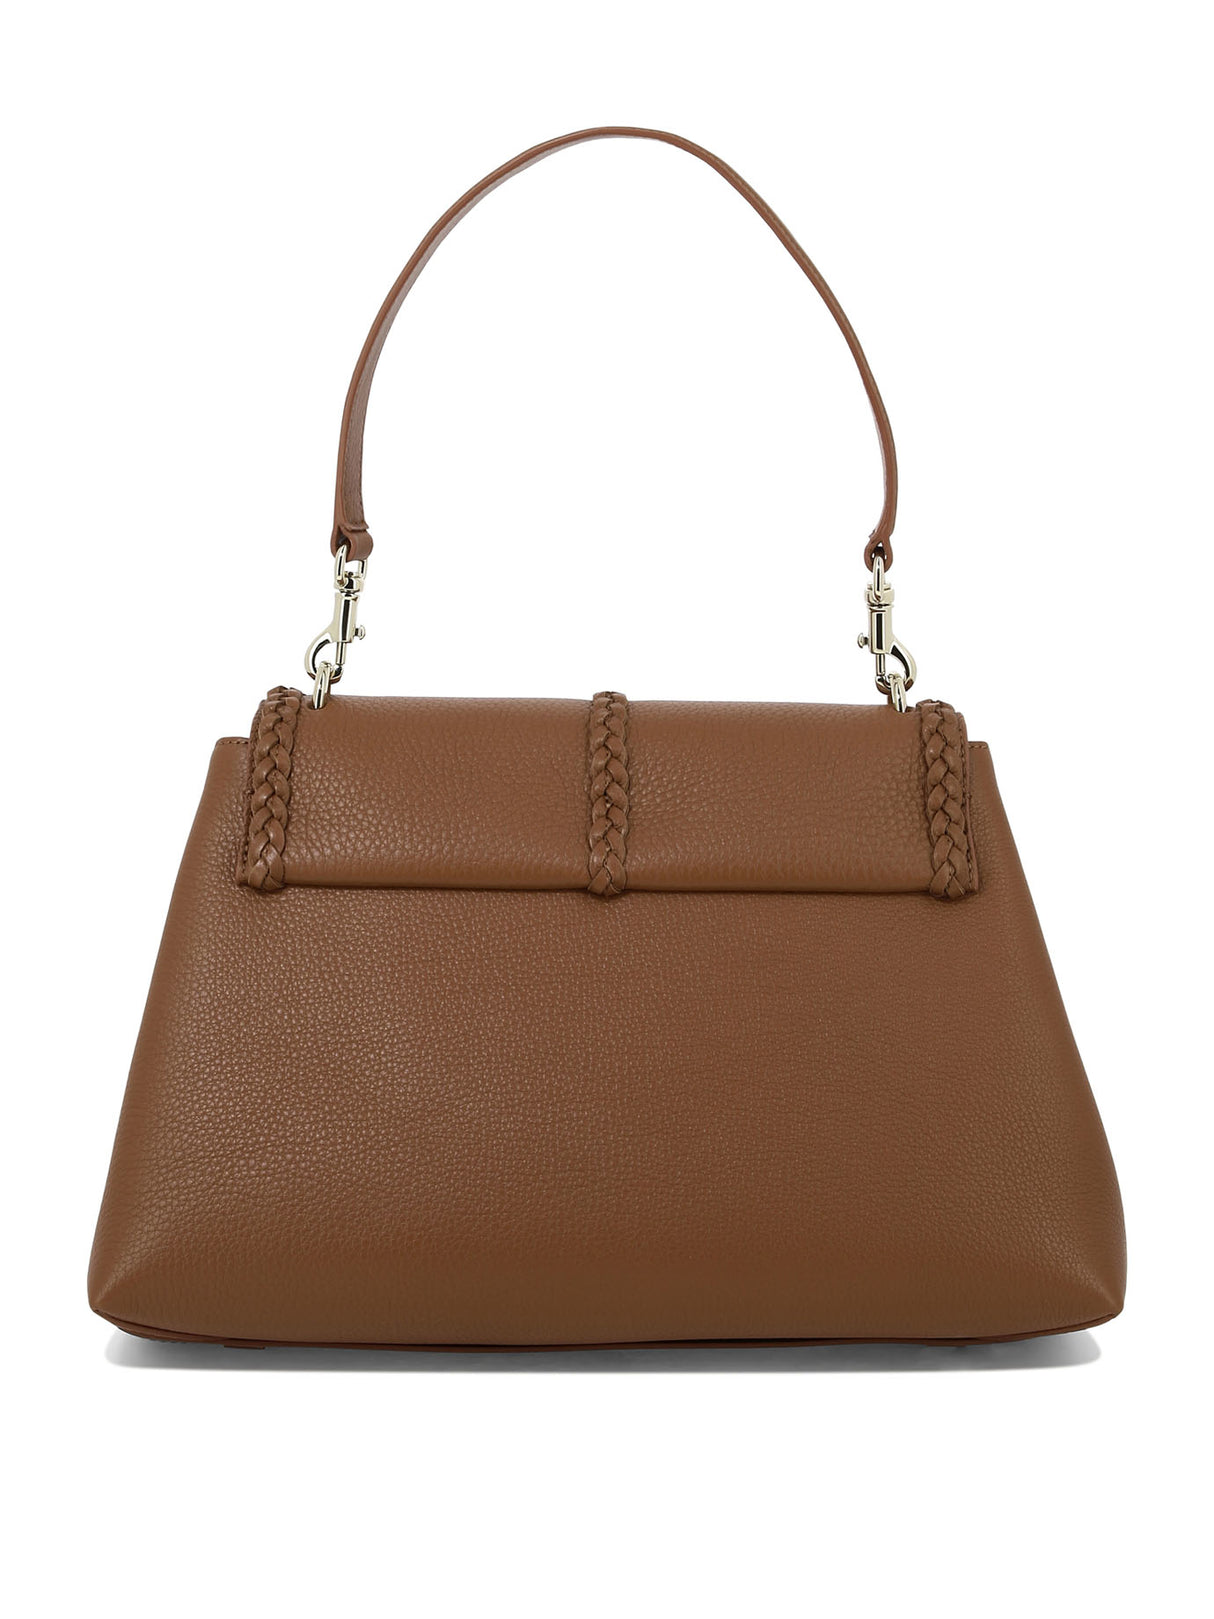 CHLOÉ Penelope Medium Brown Leather Shoulder Bag for Women